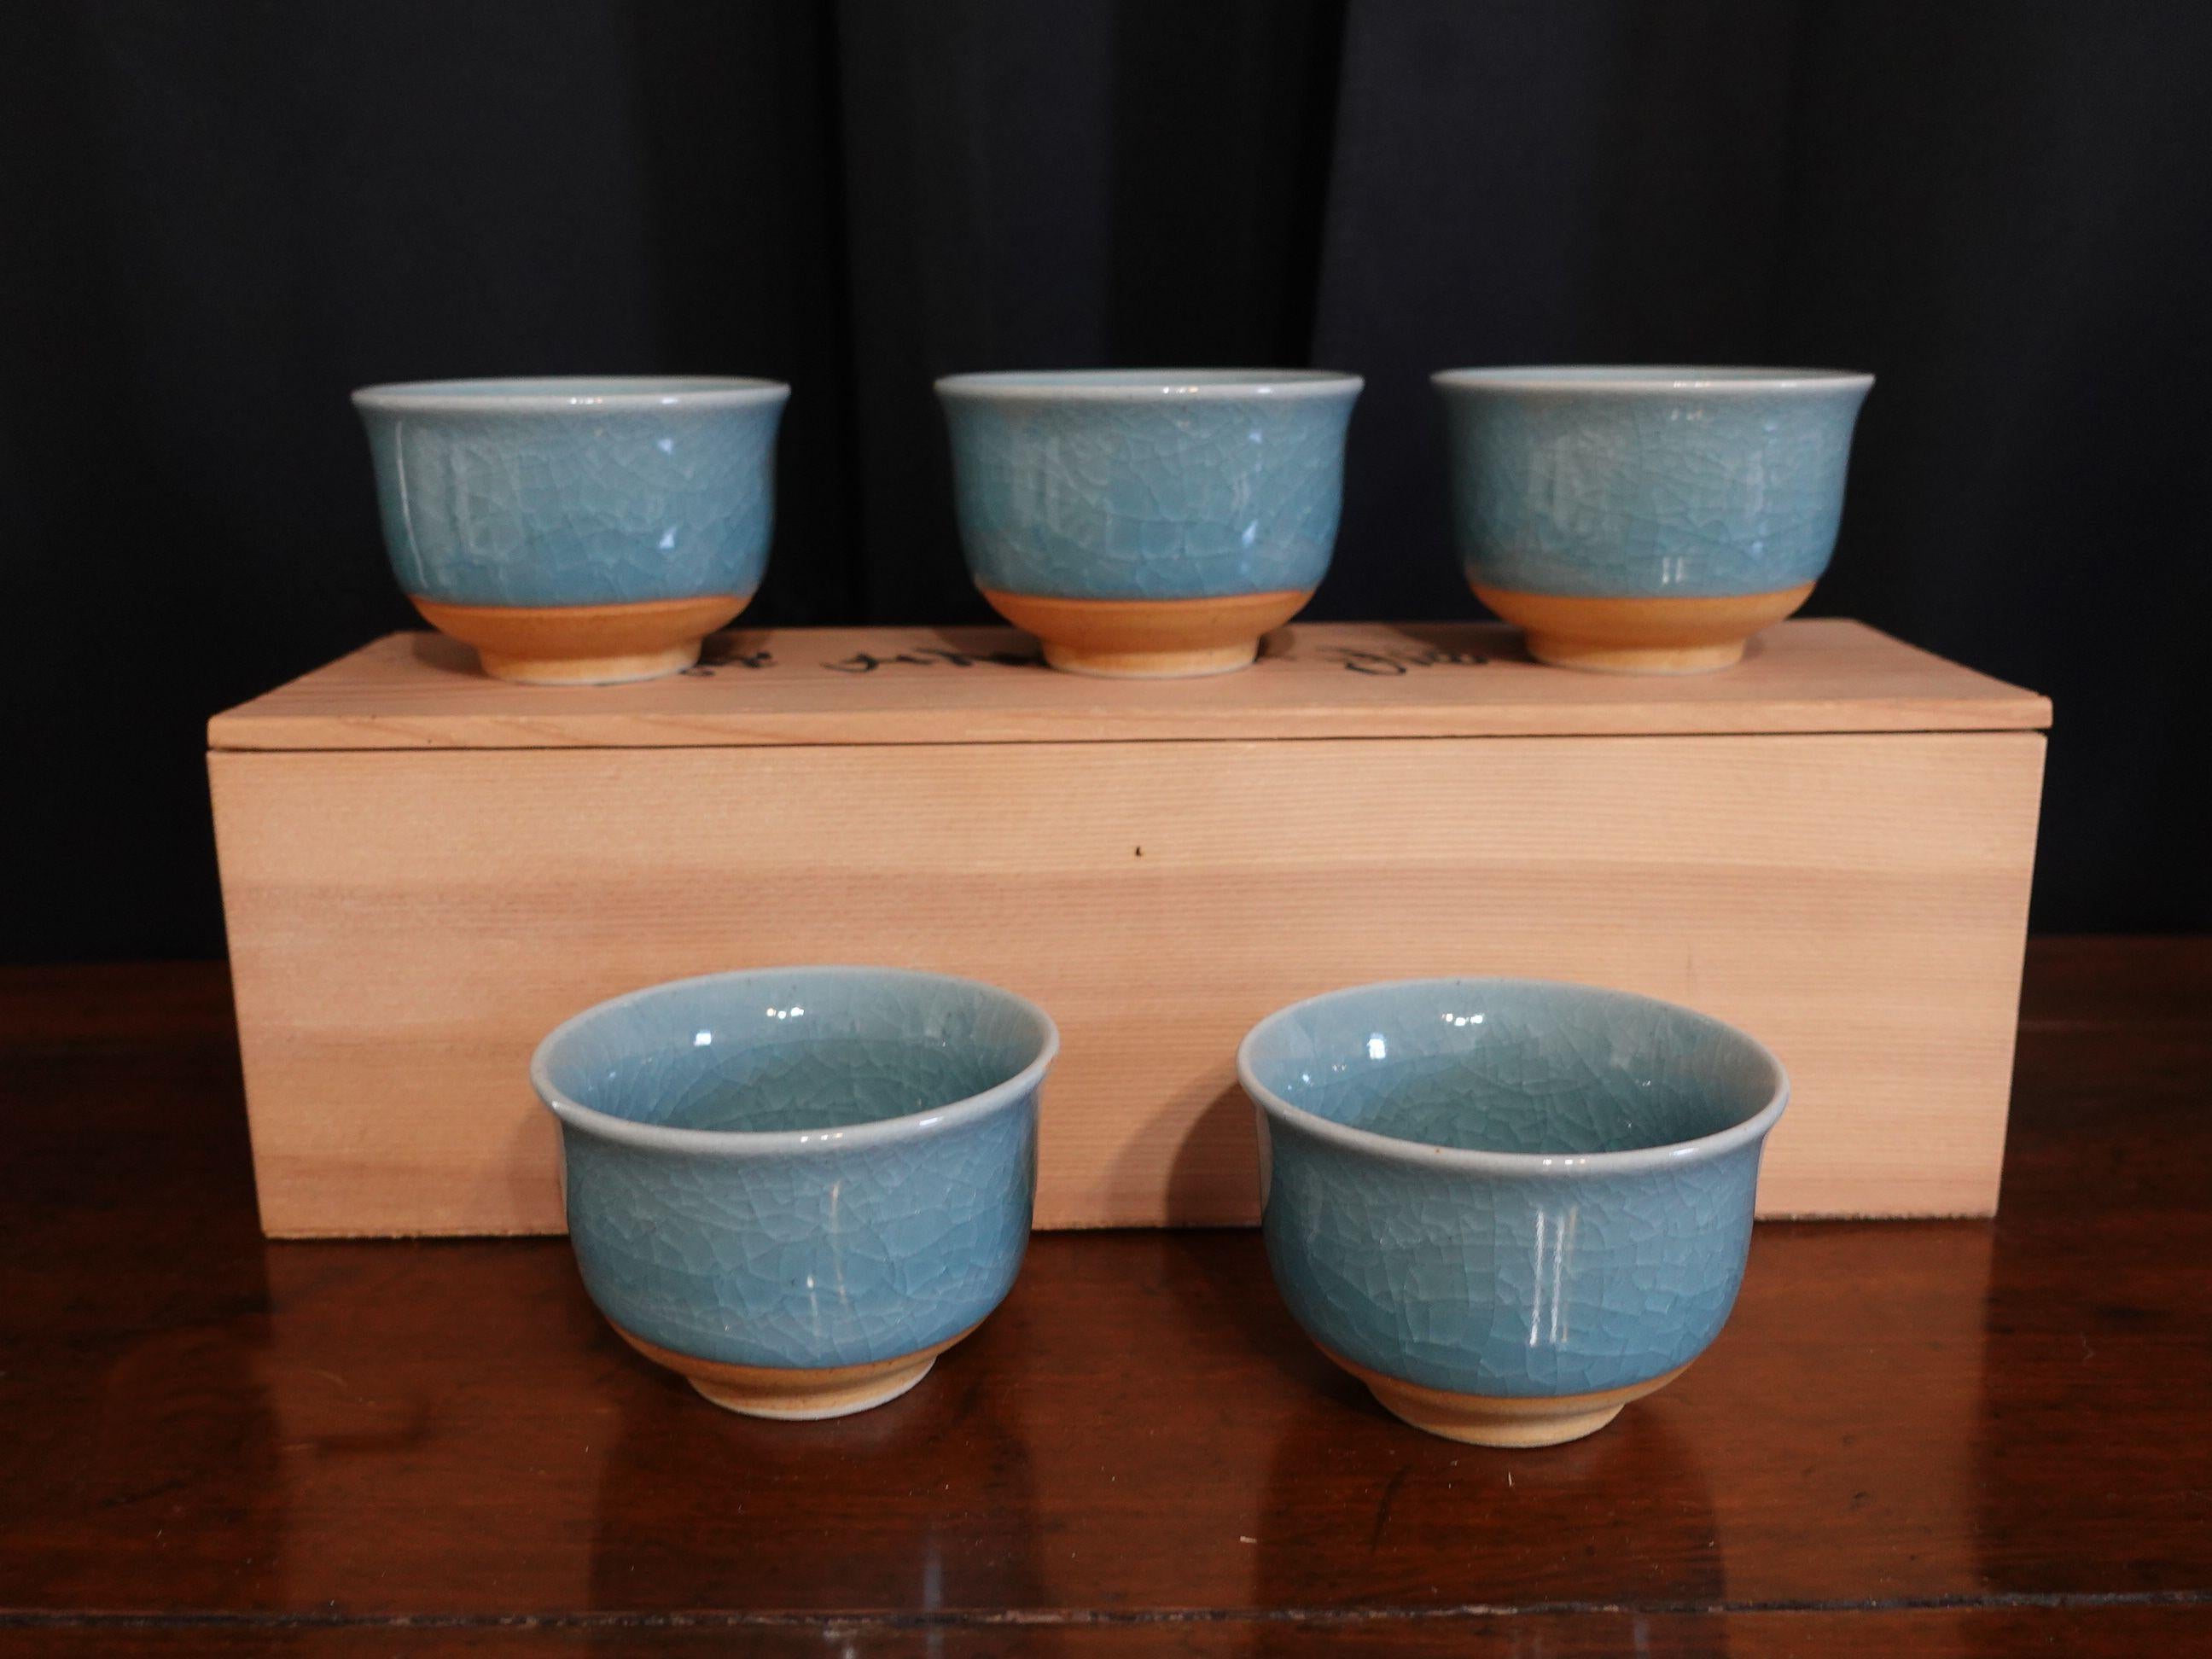 Alt - Satz von 5 japanischen Tajimi Teetassen mit hellblauer Glasur.
Originalverpackung mit dem Siegel

In gutem Original-Neuzustand und gerade im Lager gefunden, noch nie benutzt.